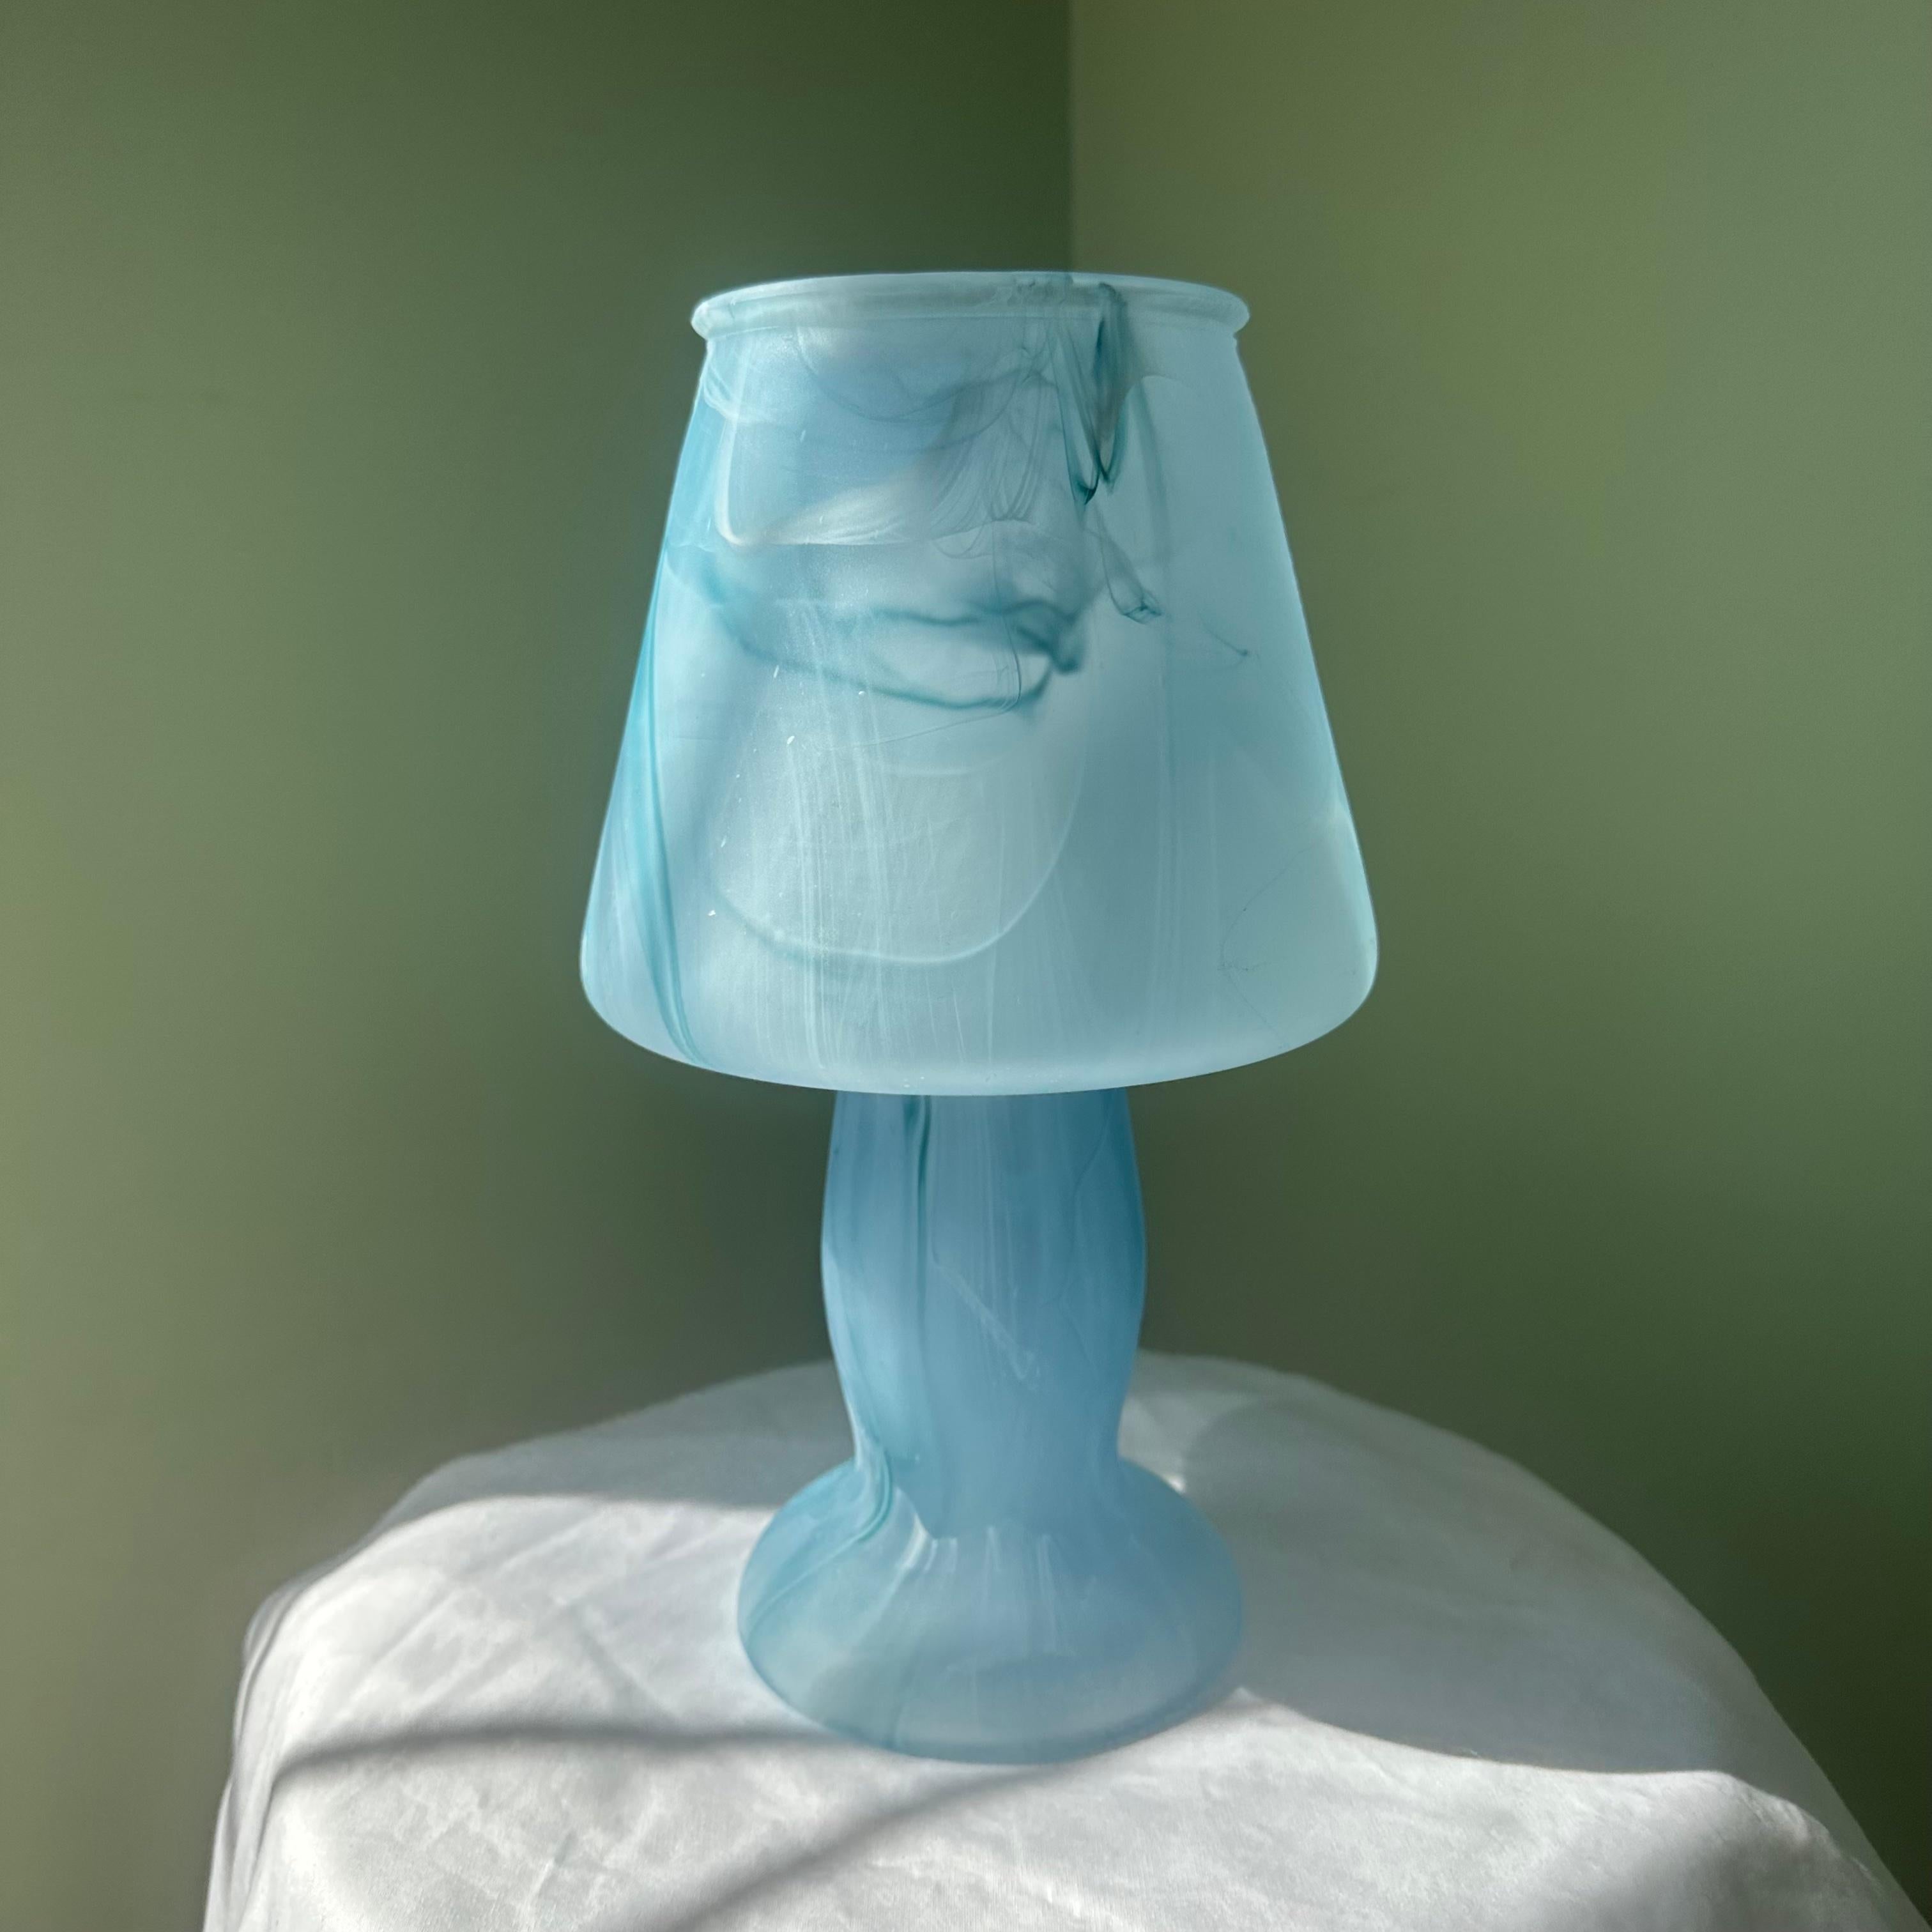 Lampe de table ou de bureau à champignon en verre bleu. Whiting dans un motif de type tie-dye, les nuances de bleu se mélangent à des touches de blanc. Moulée dans une seule pièce de verre solide, cette lampe est ouverte sur le dessus. Une pièce de